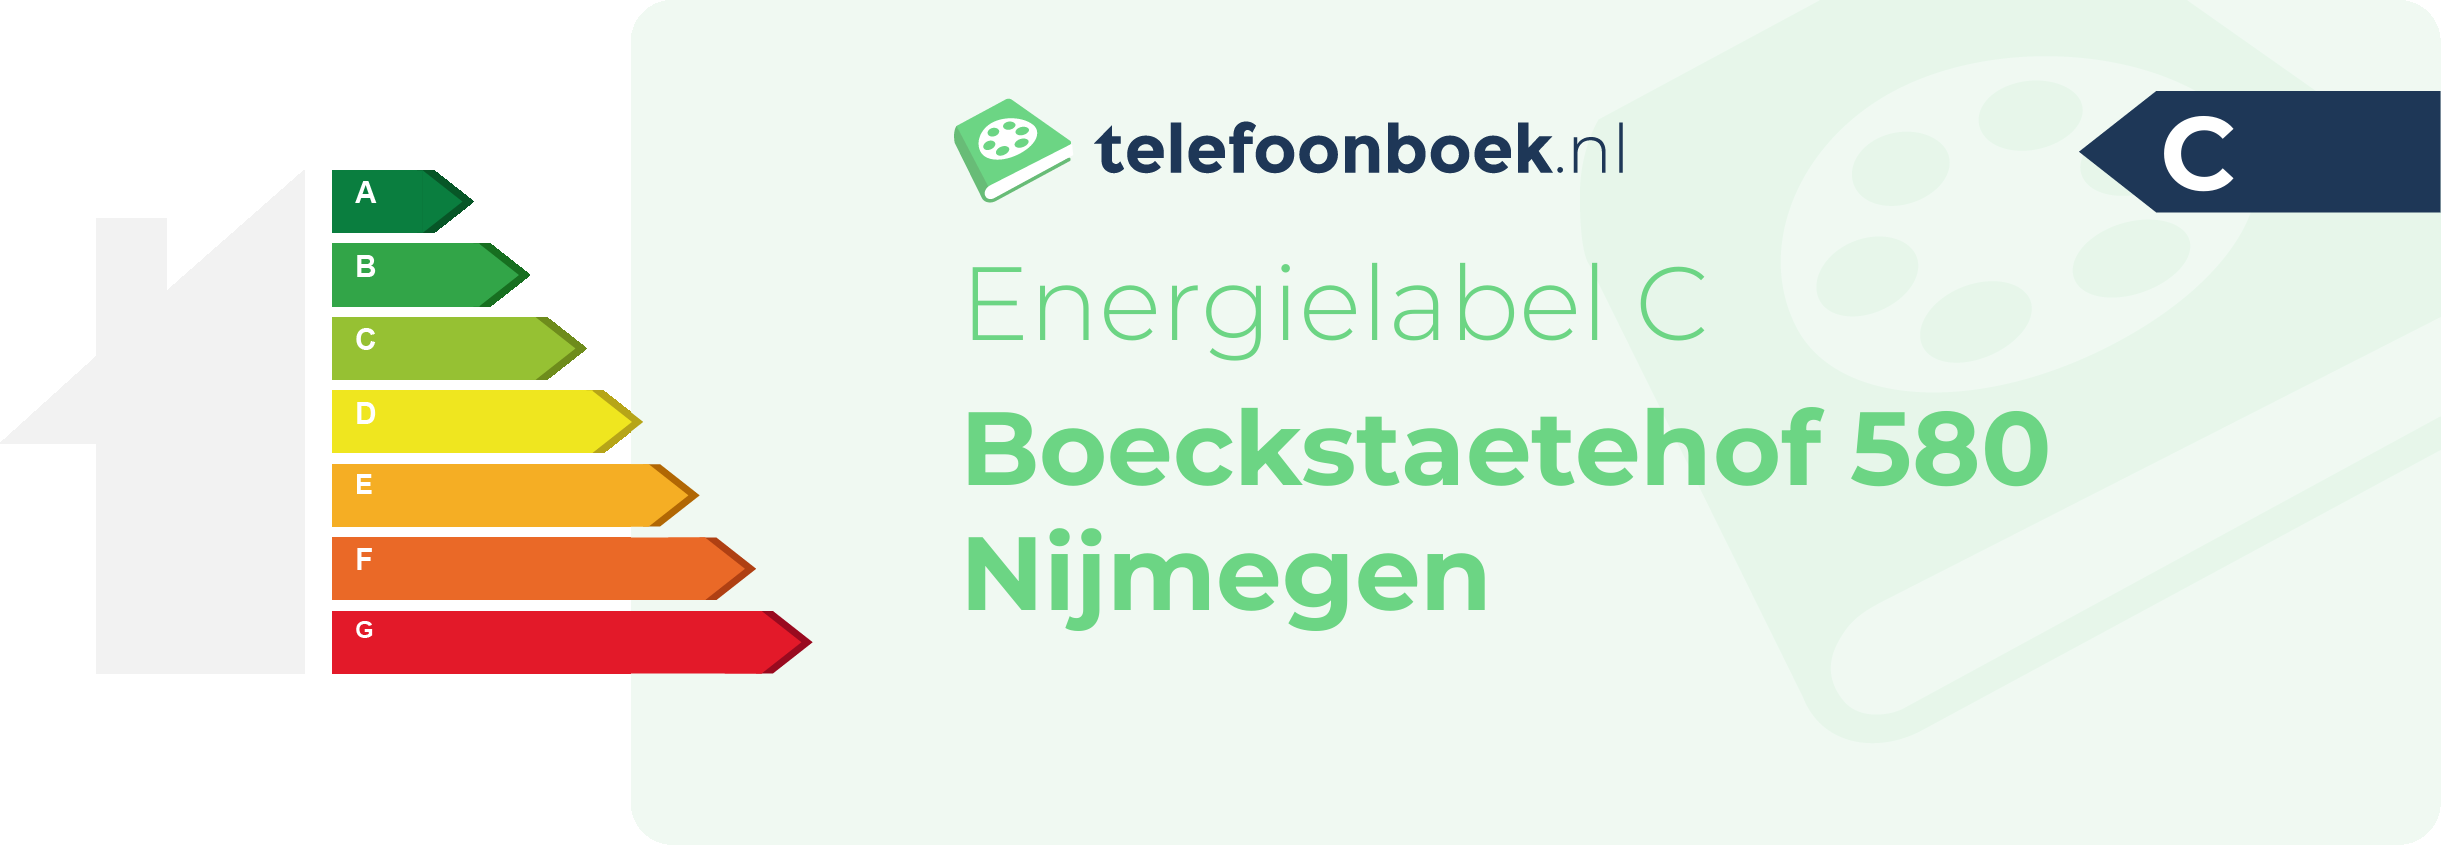 Energielabel Boeckstaetehof 580 Nijmegen